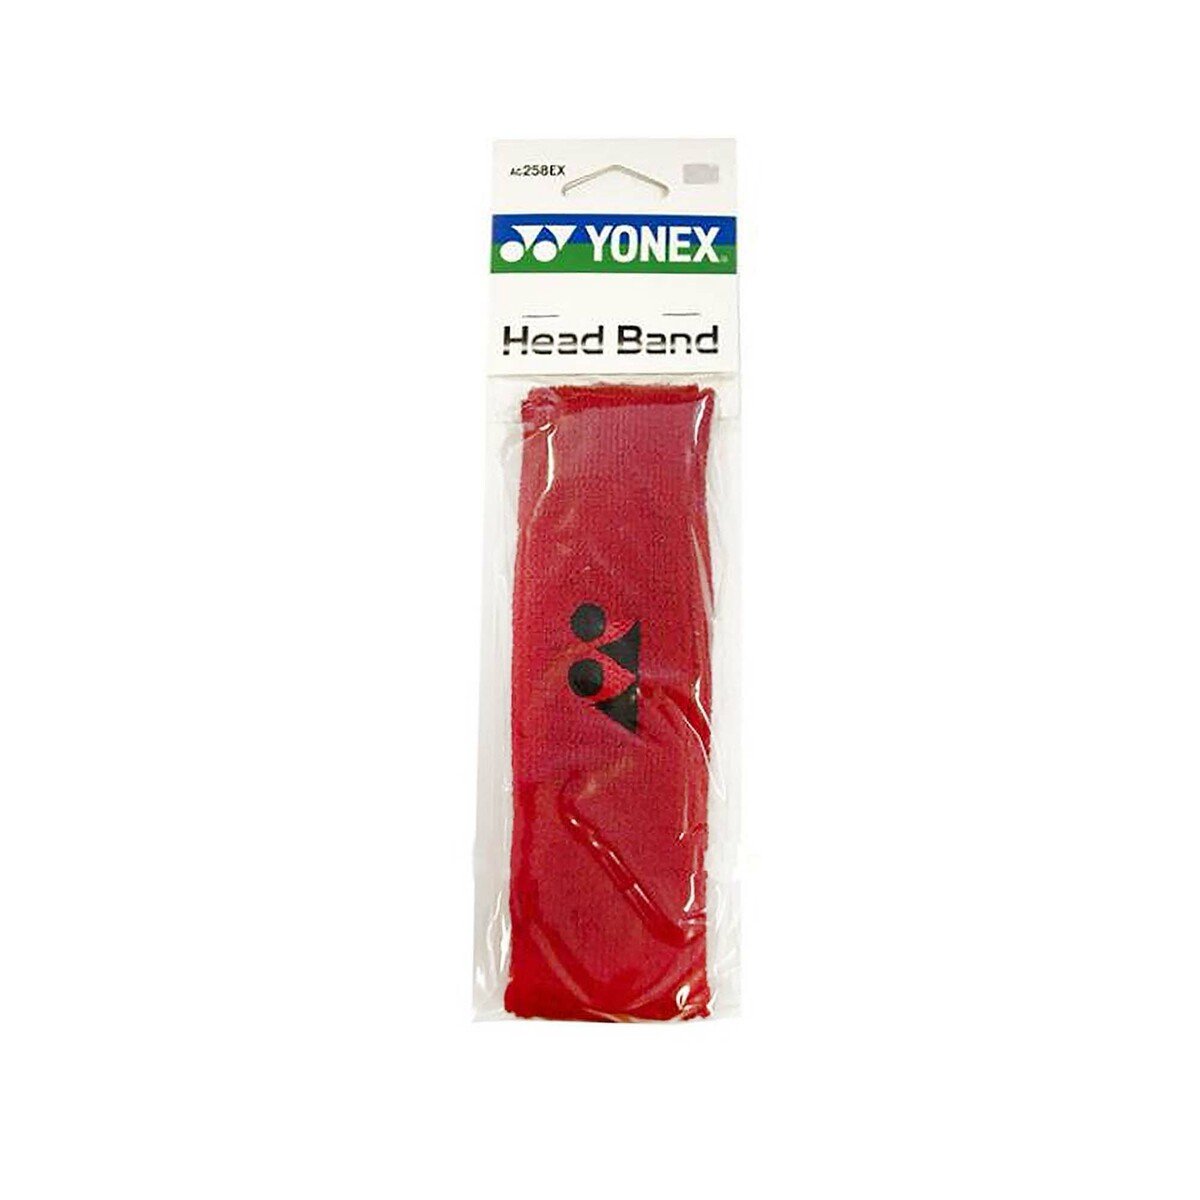 Yonex Head Band AC258EX Red